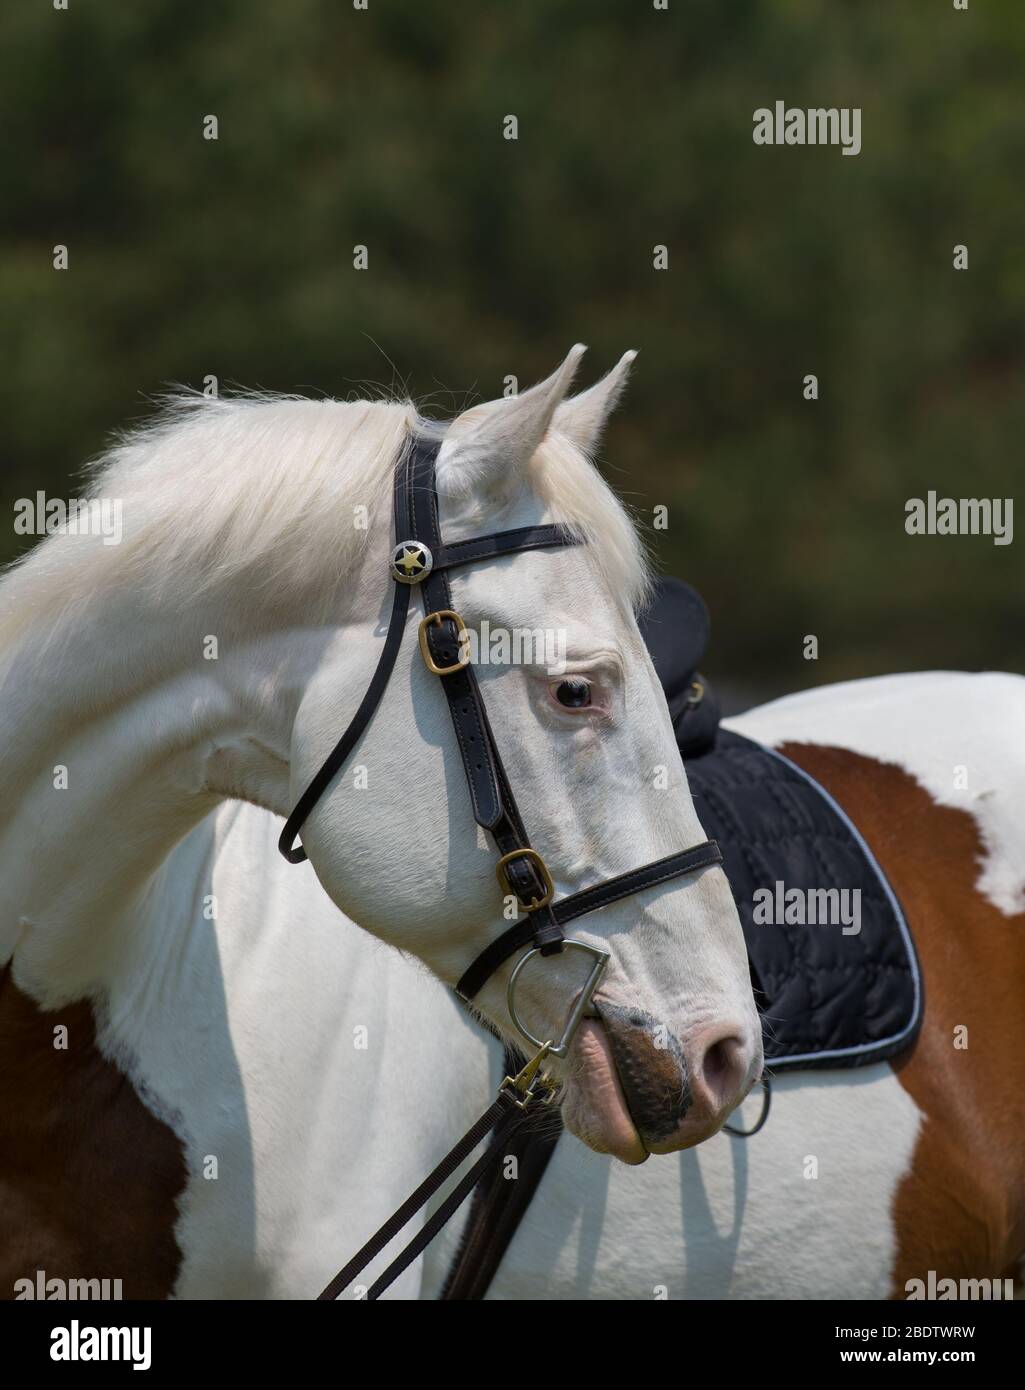 Portrait of Paint Horse Head Shot mit englischem Leder Trail-Zügel mit Clip Off Zügel und Stern am Kopf Stall sauberes weißes Pferd mit braunen Aufnäher Stockfoto